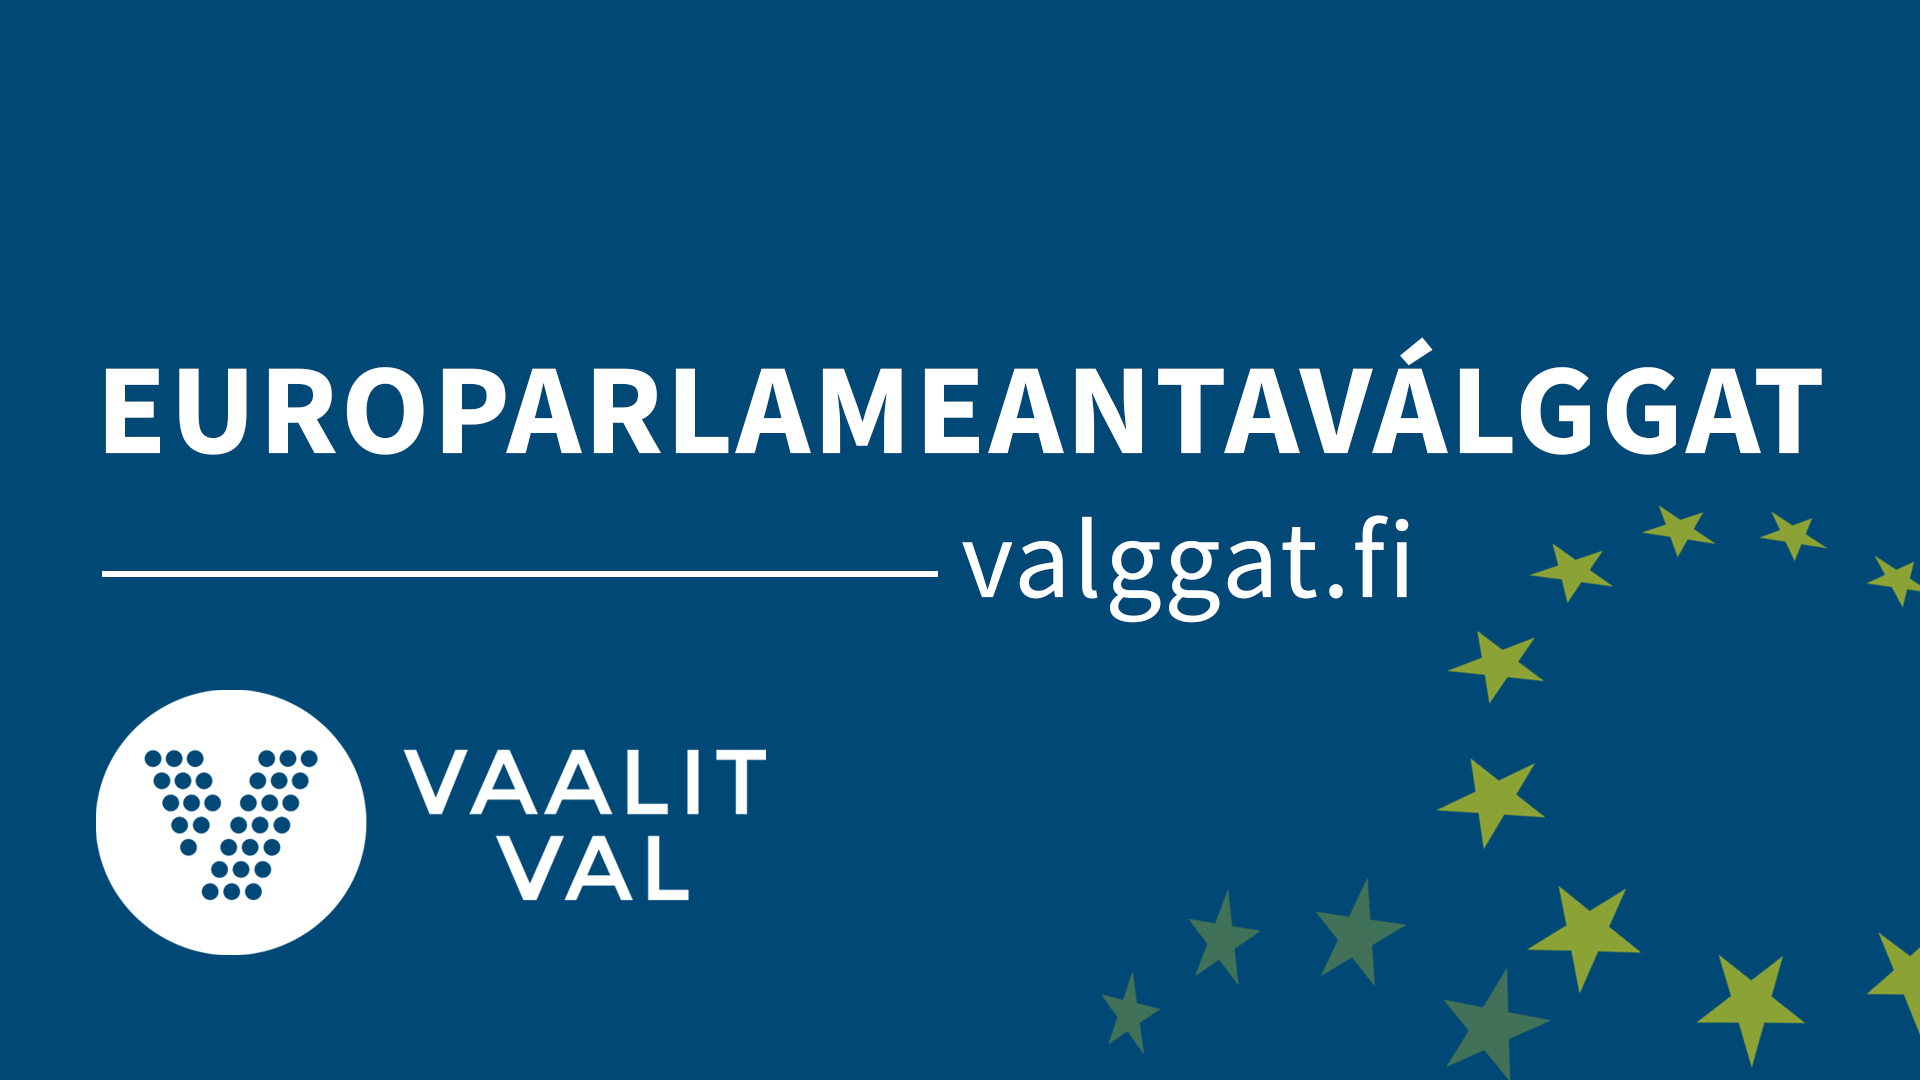 Europarlameantaválggat, valggat.fi